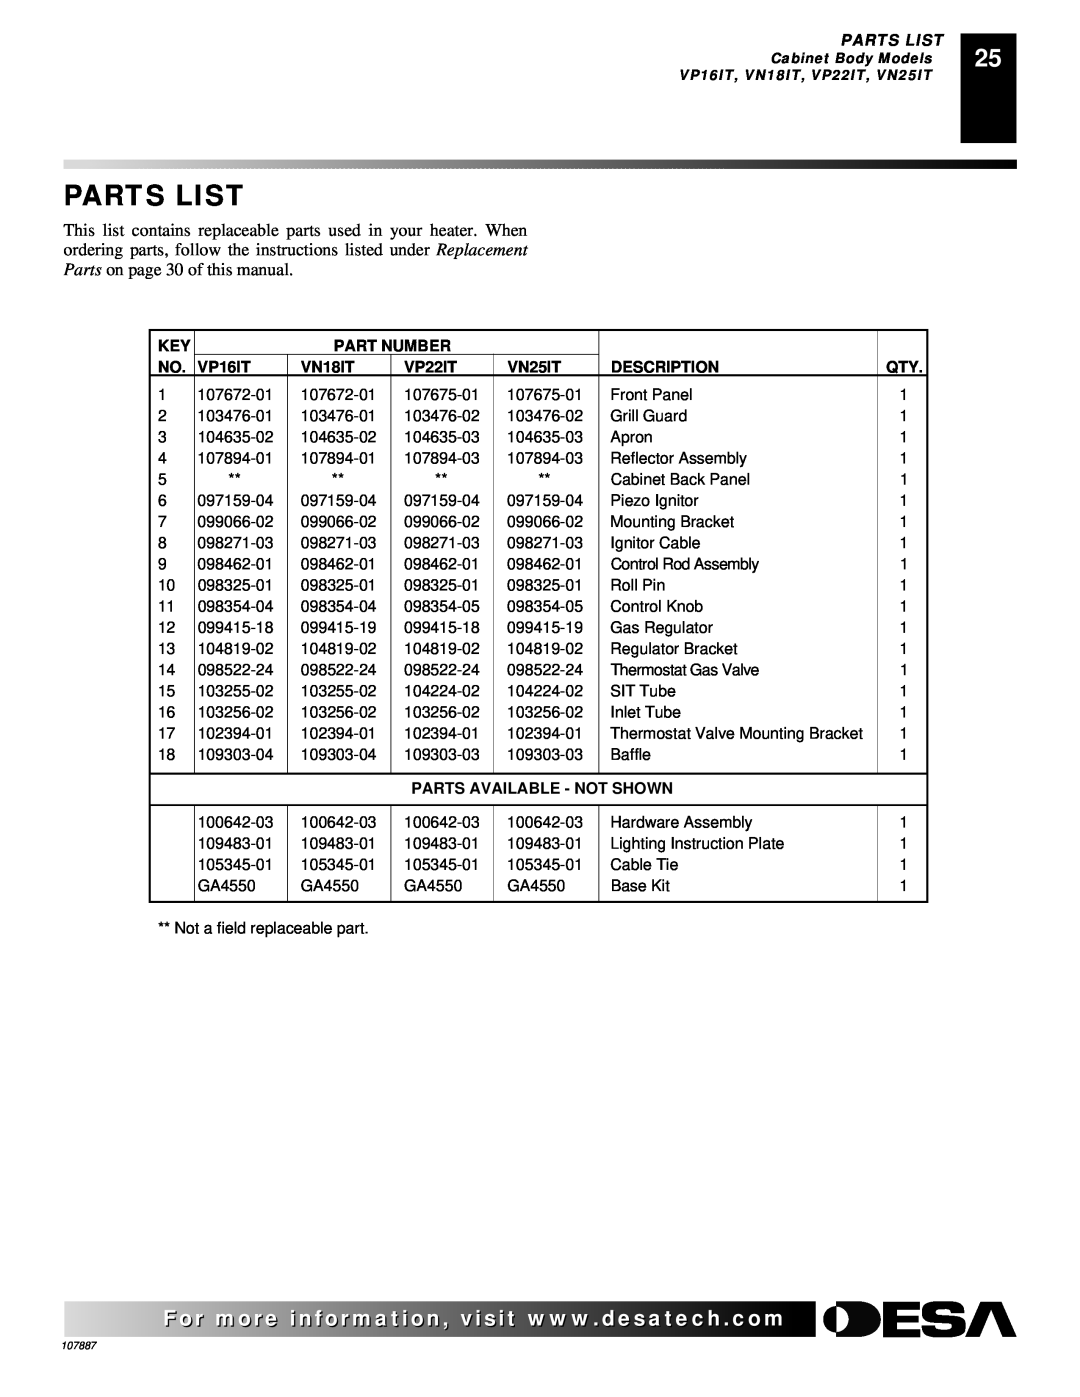 Vanguard Heating VP26 Parts List, Part Number, VP16IT, VN18IT, VP22IT, VN25IT, Description, Parts Available - Not Shown 